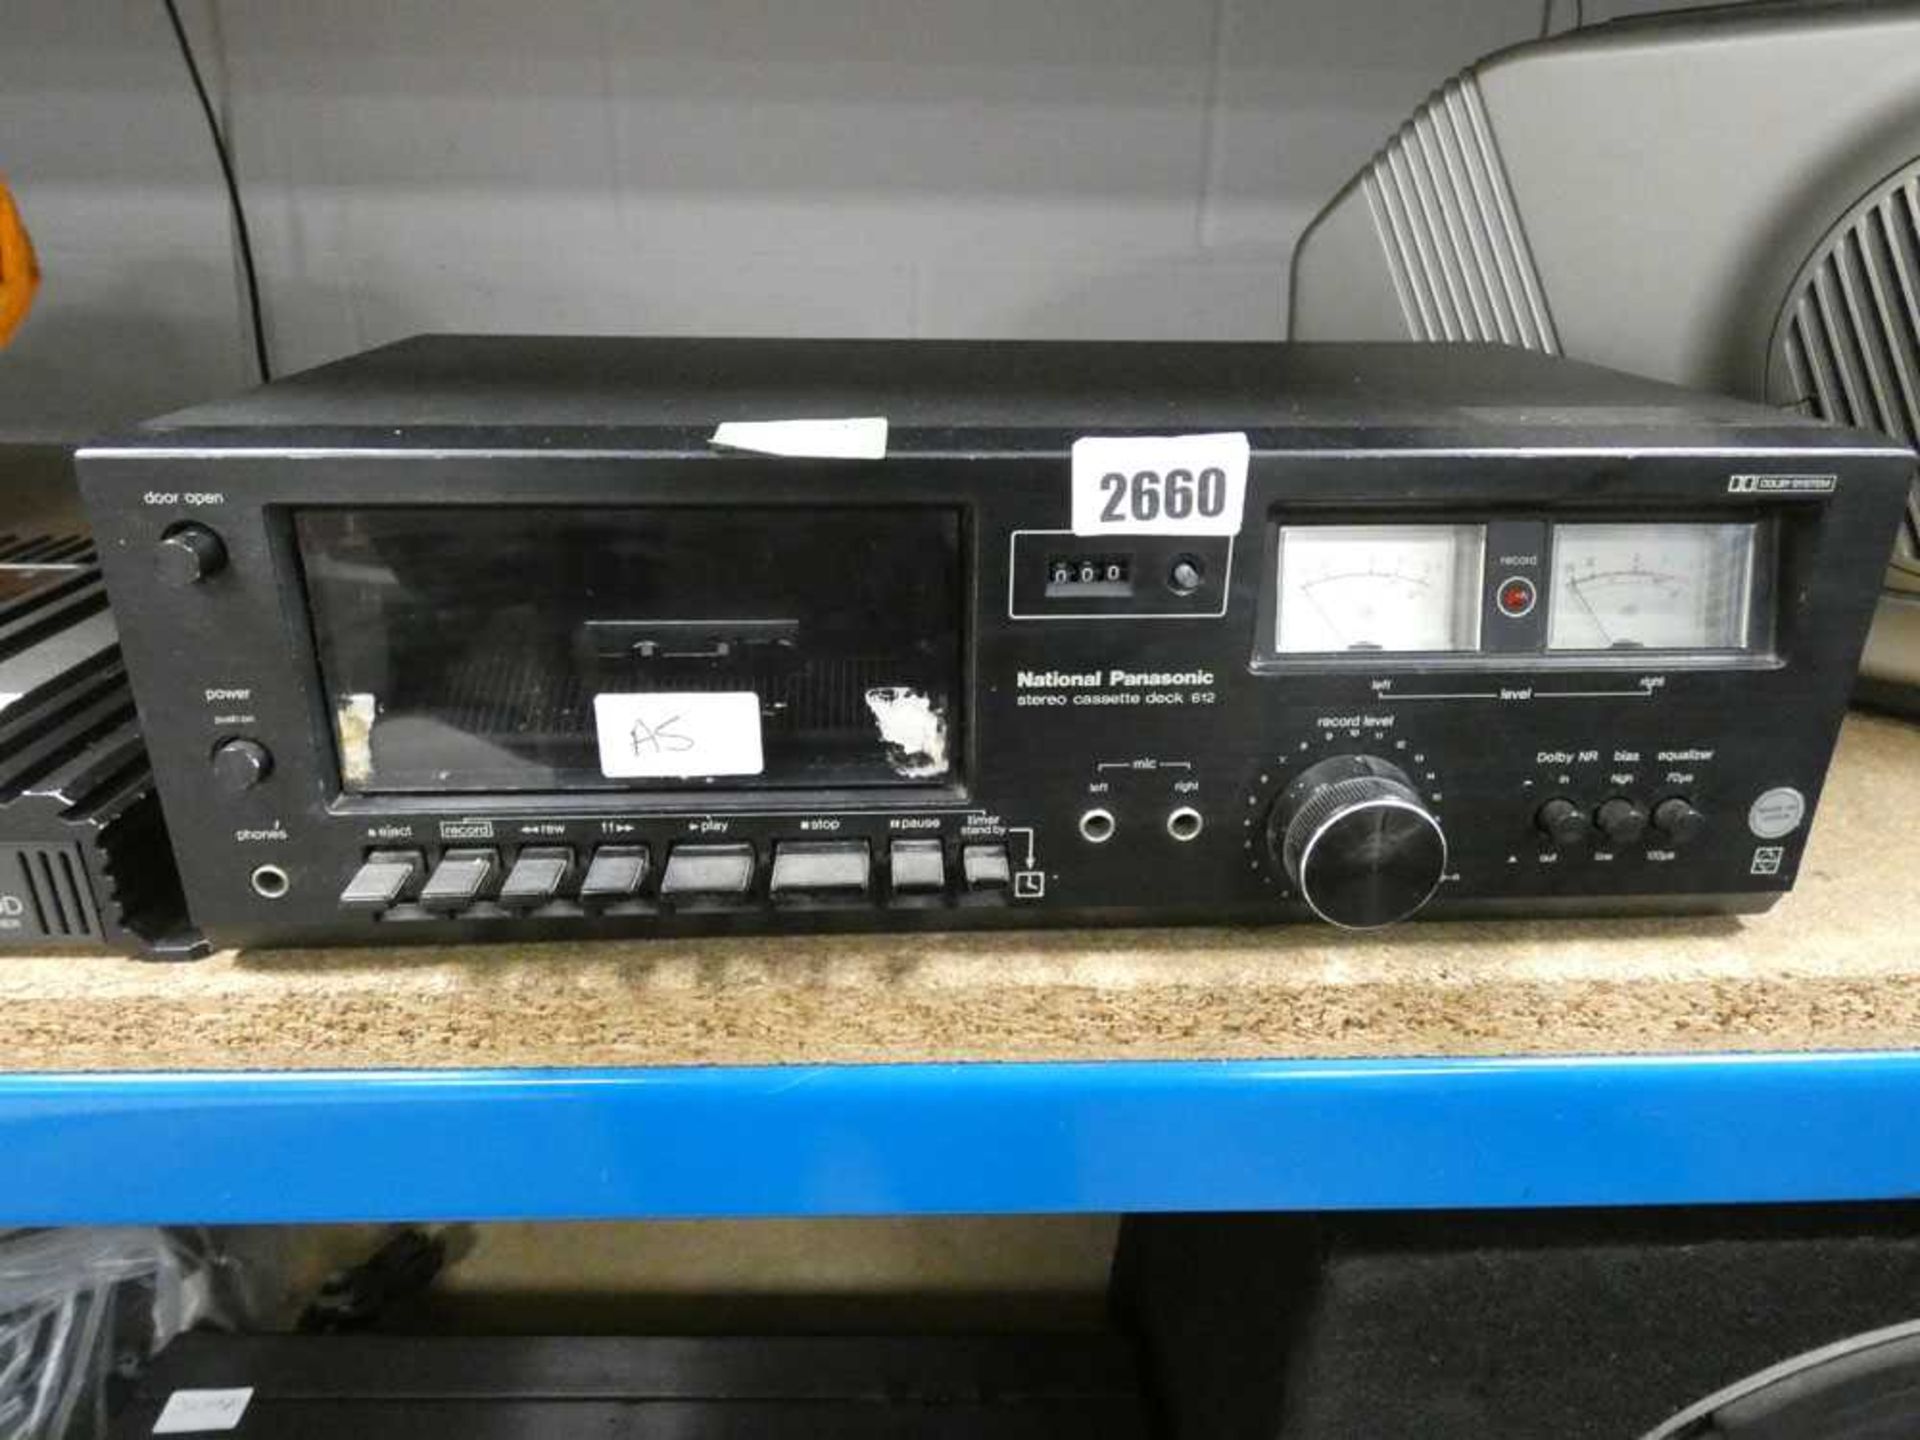 National Panasonic stereo cassette deck model 612